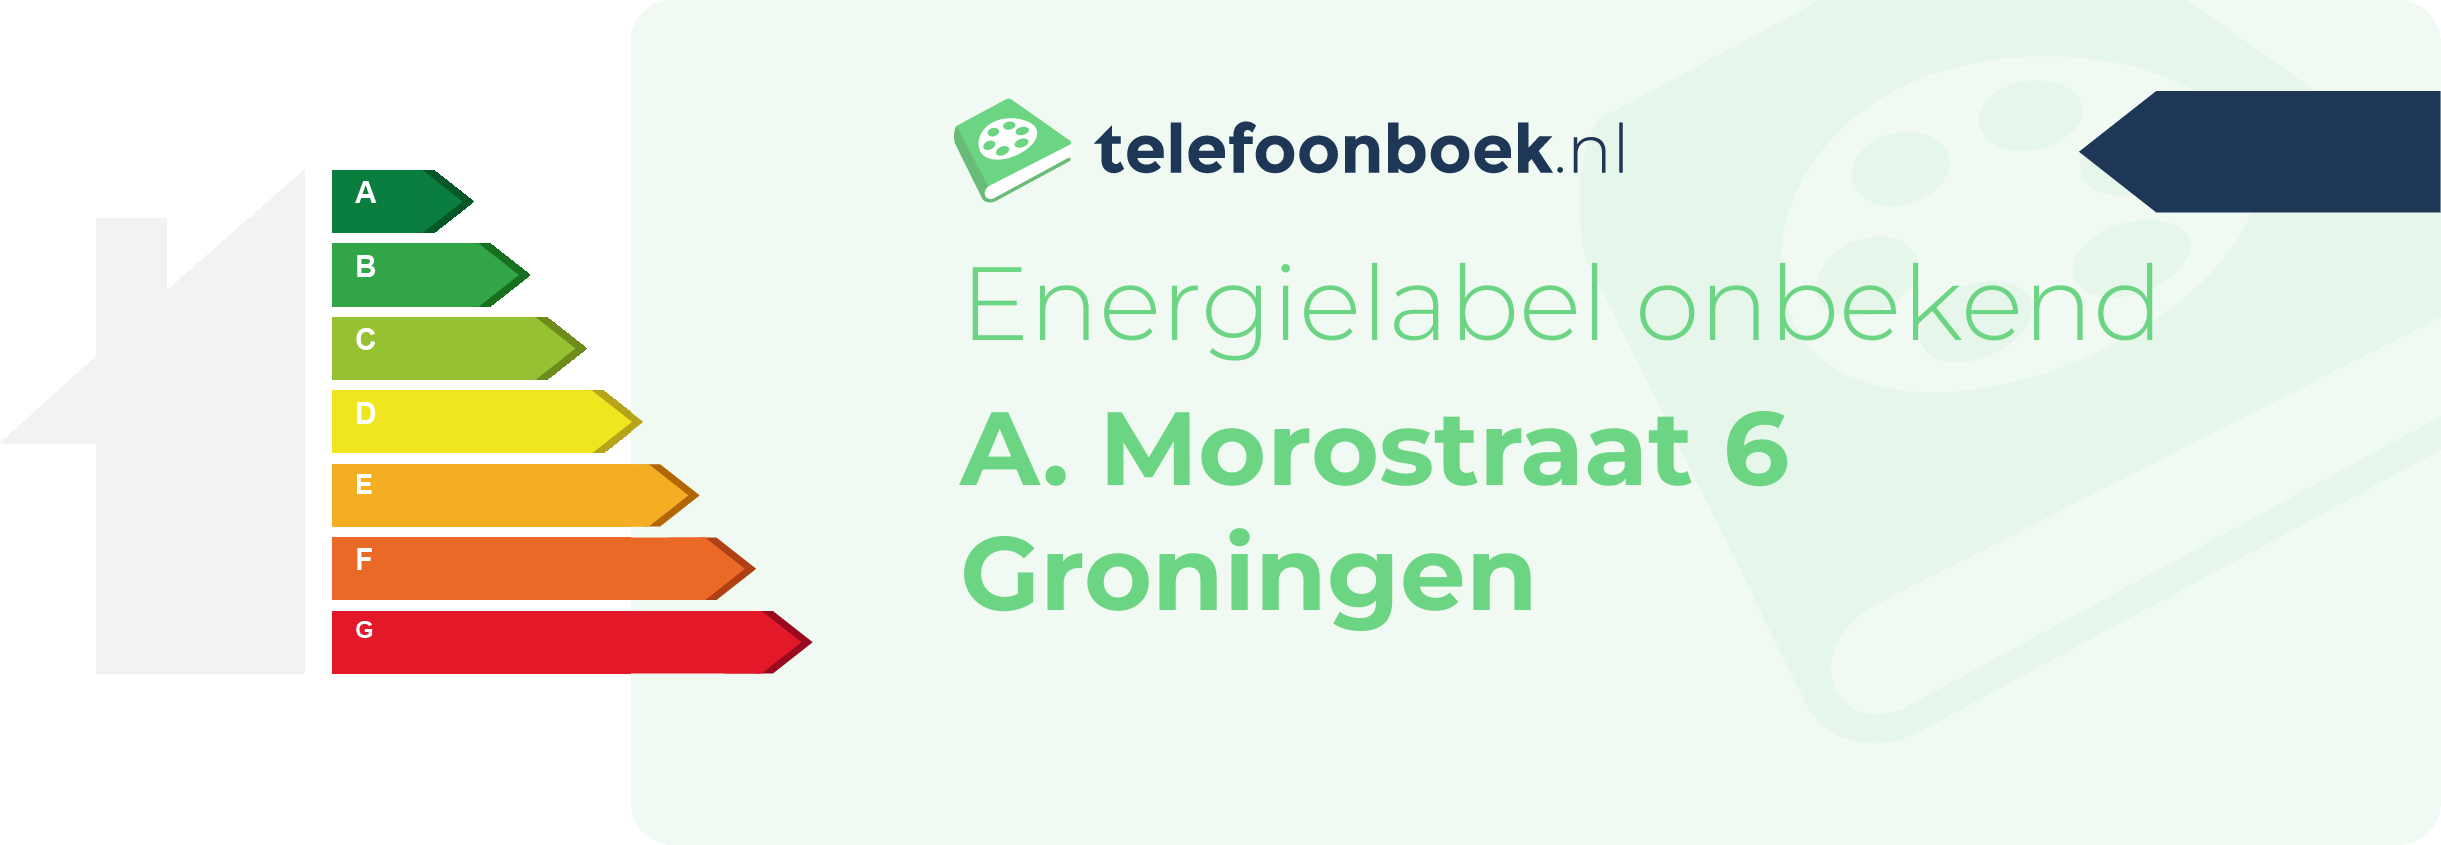 Energielabel A. Morostraat 6 Groningen